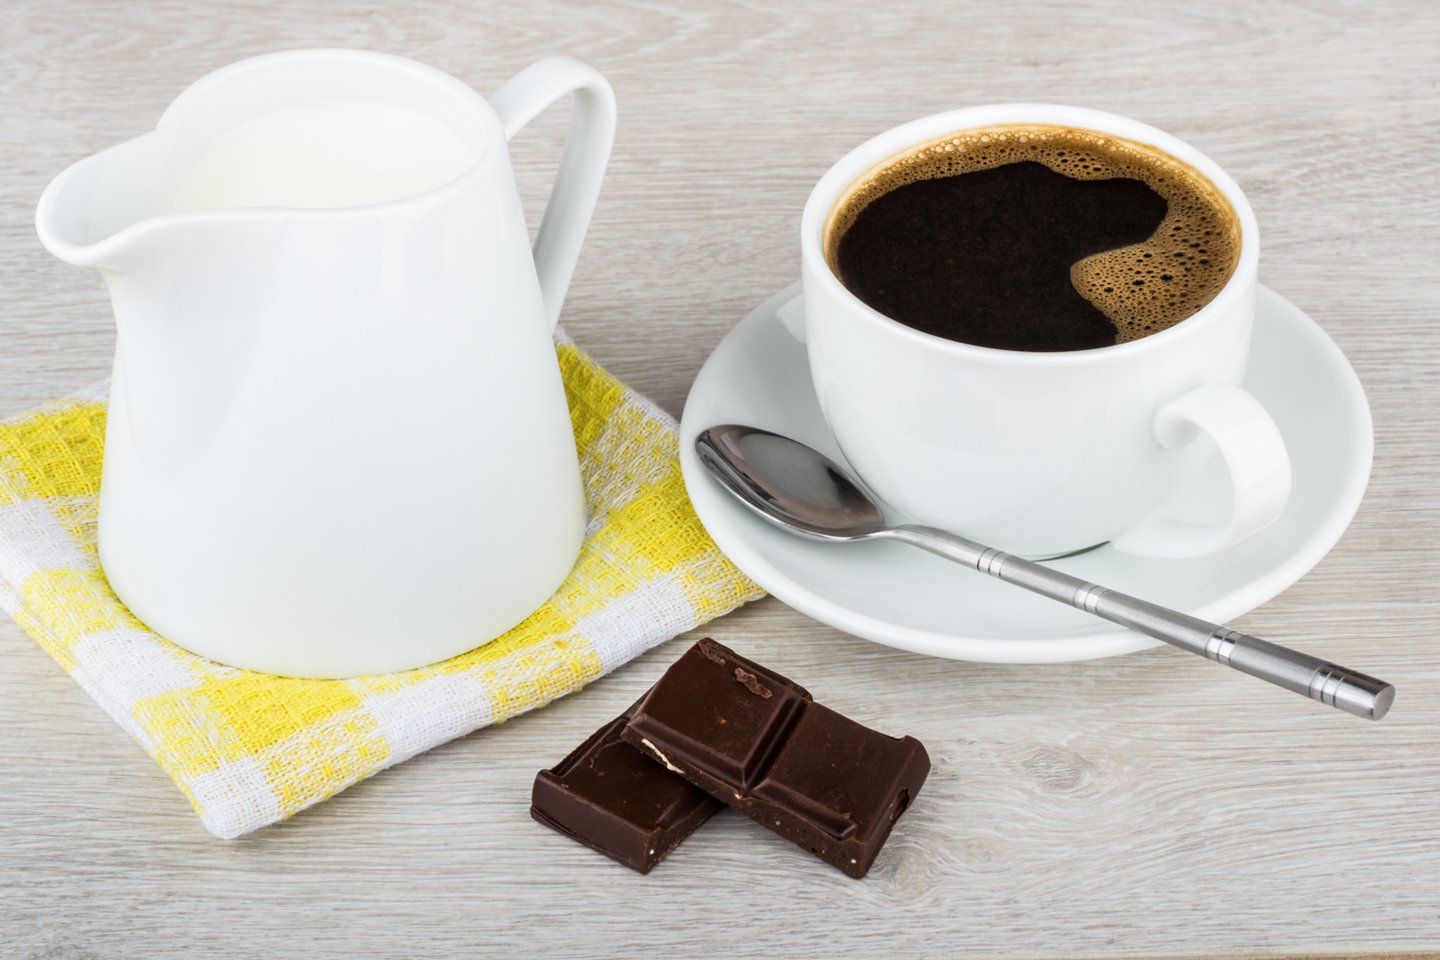 Juodasis šokoladas dėl jame esančios kakavos žinomas ir kaip vienas geriausių antioksidantų šaltinių. <br>123rf nuotr.